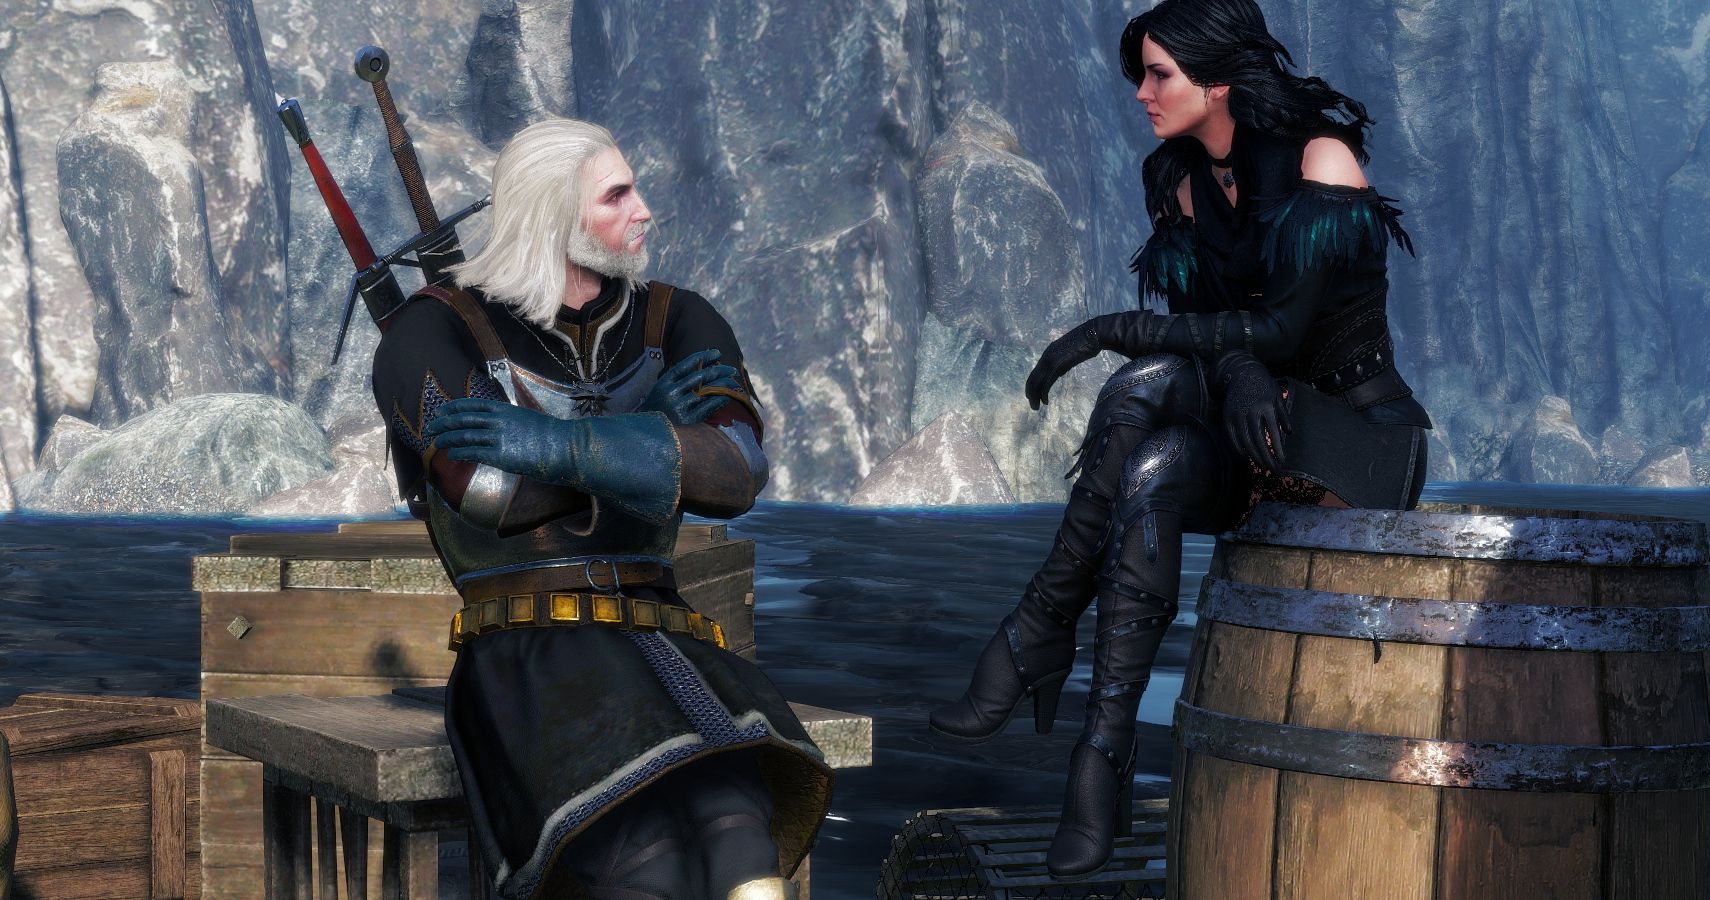 Witcher 3 screnshot of Geralt and Yennefer On Skellige